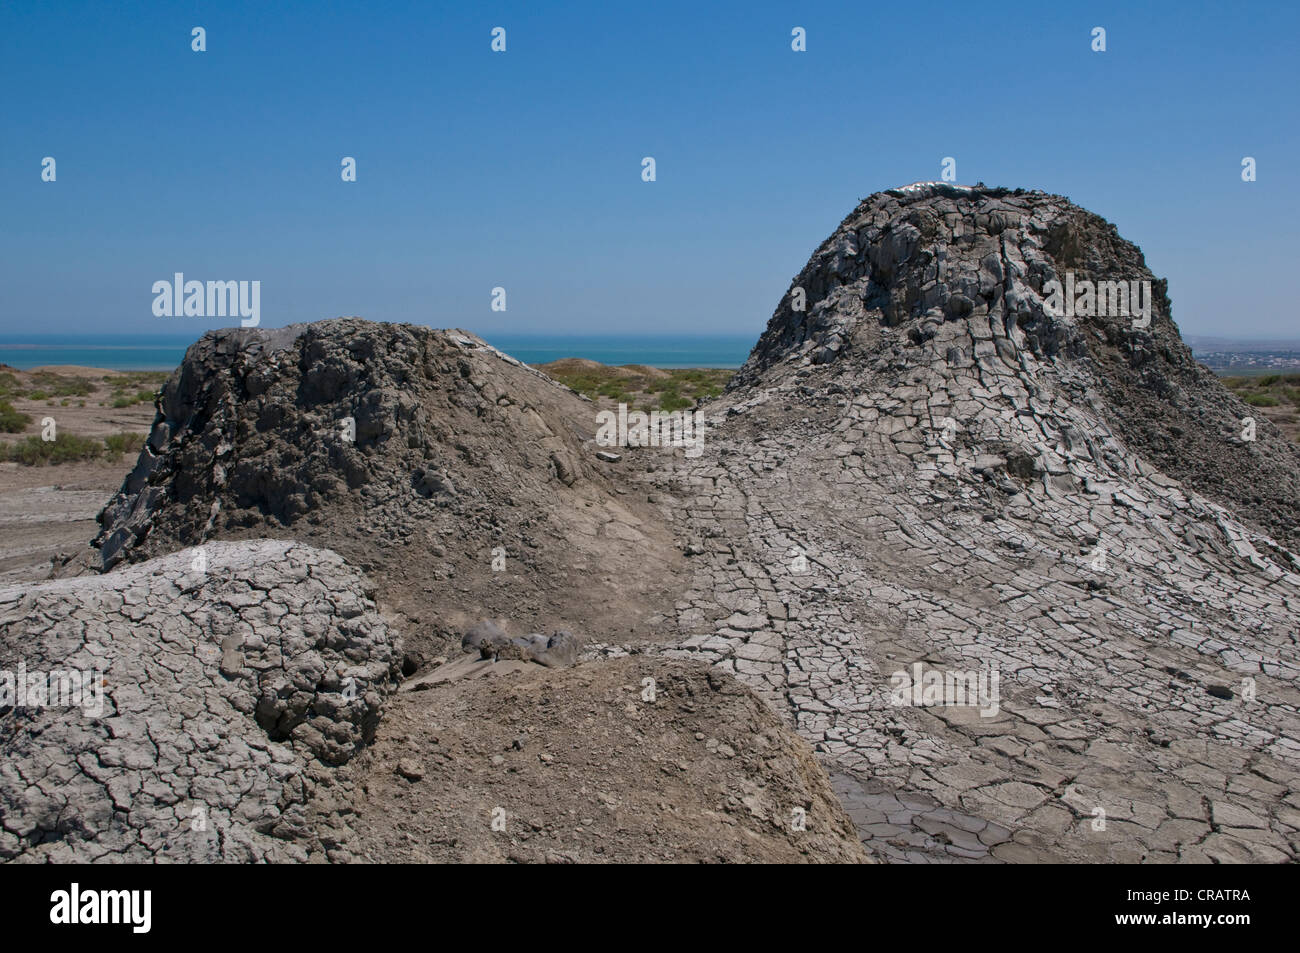 Los volcanes de lodo de Azerbaiyán, Oriente Medio Foto de stock